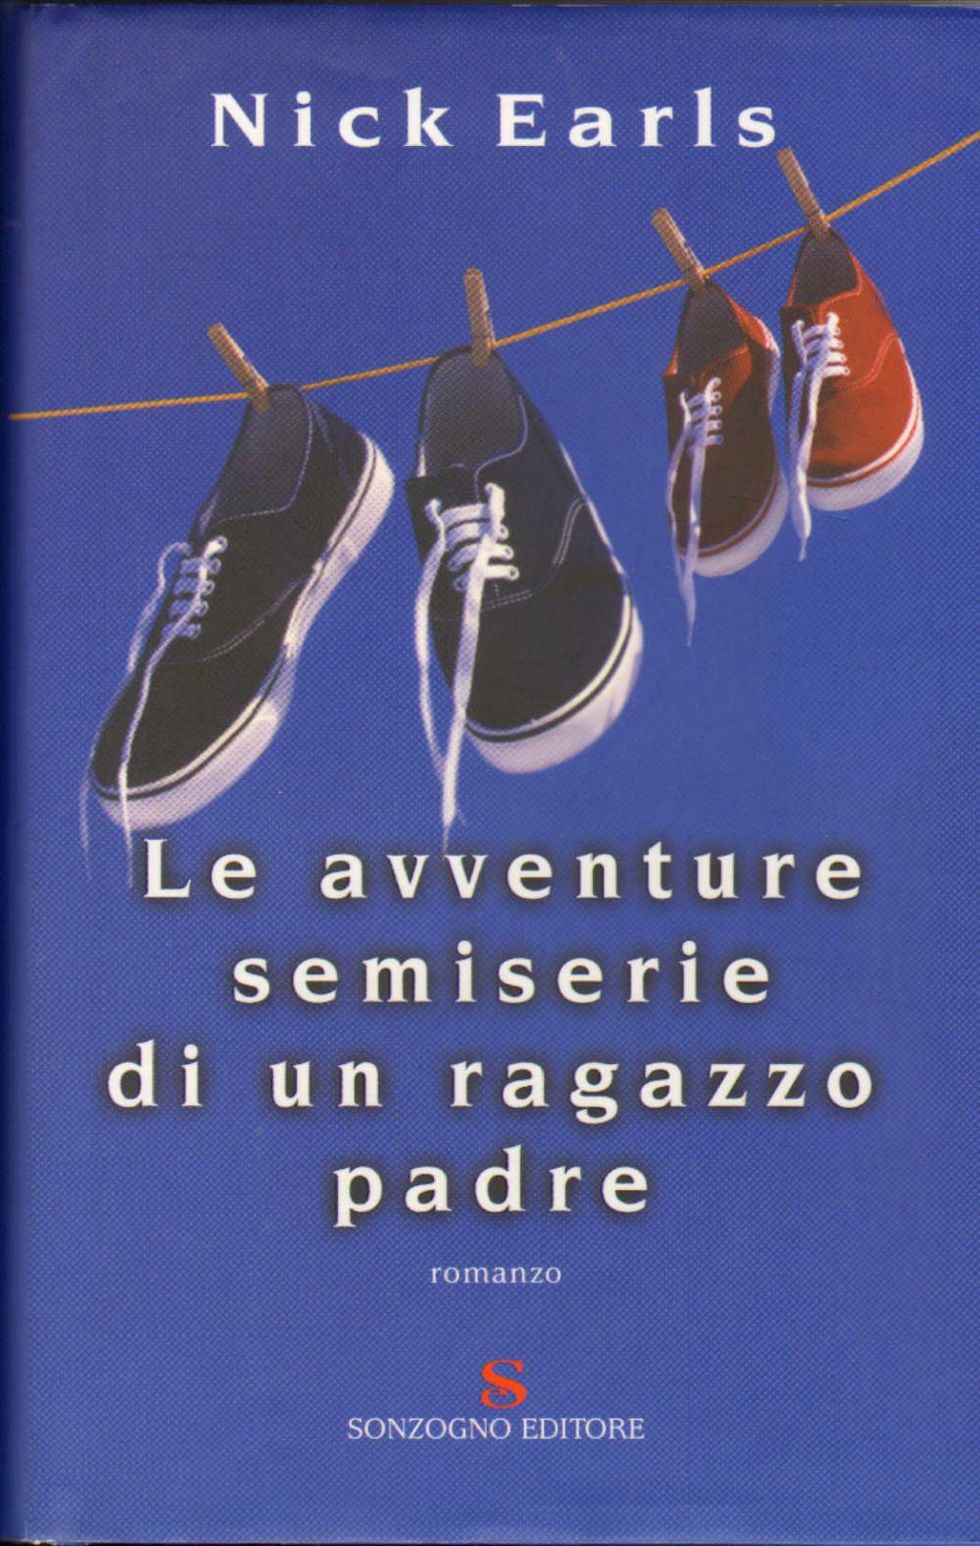 La copertina di "Le avventure semiserie di un ragazzo padre" di Nick Earls, Sonzogno Editore